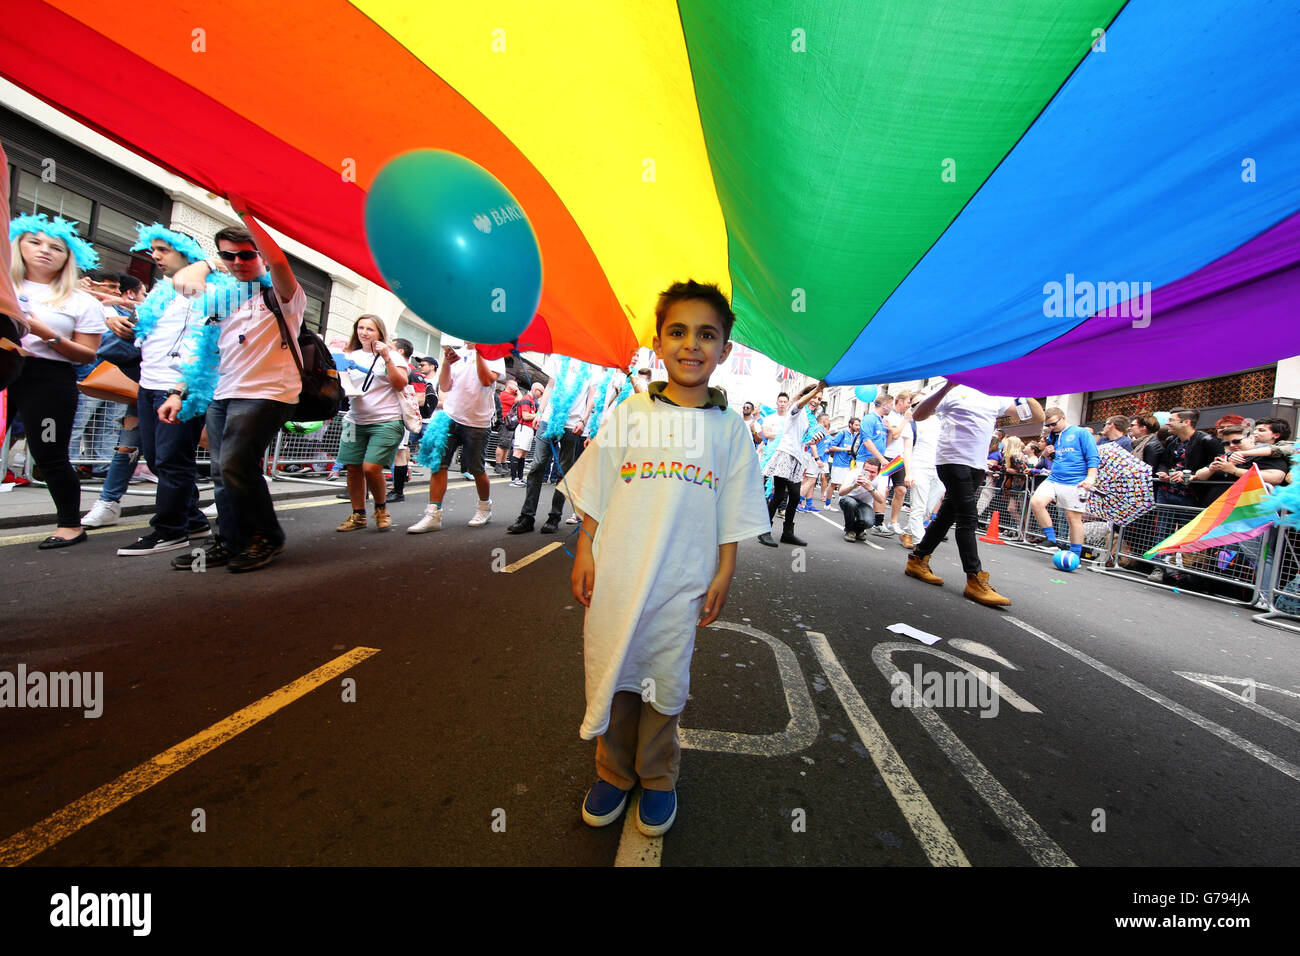 Londres, Royaume-Uni. 25 juin 2016. Les participants à la London Pride Parade à Londres, où le thème est # nofilter Crédit : Paul Brown/Alamy Live News Banque D'Images